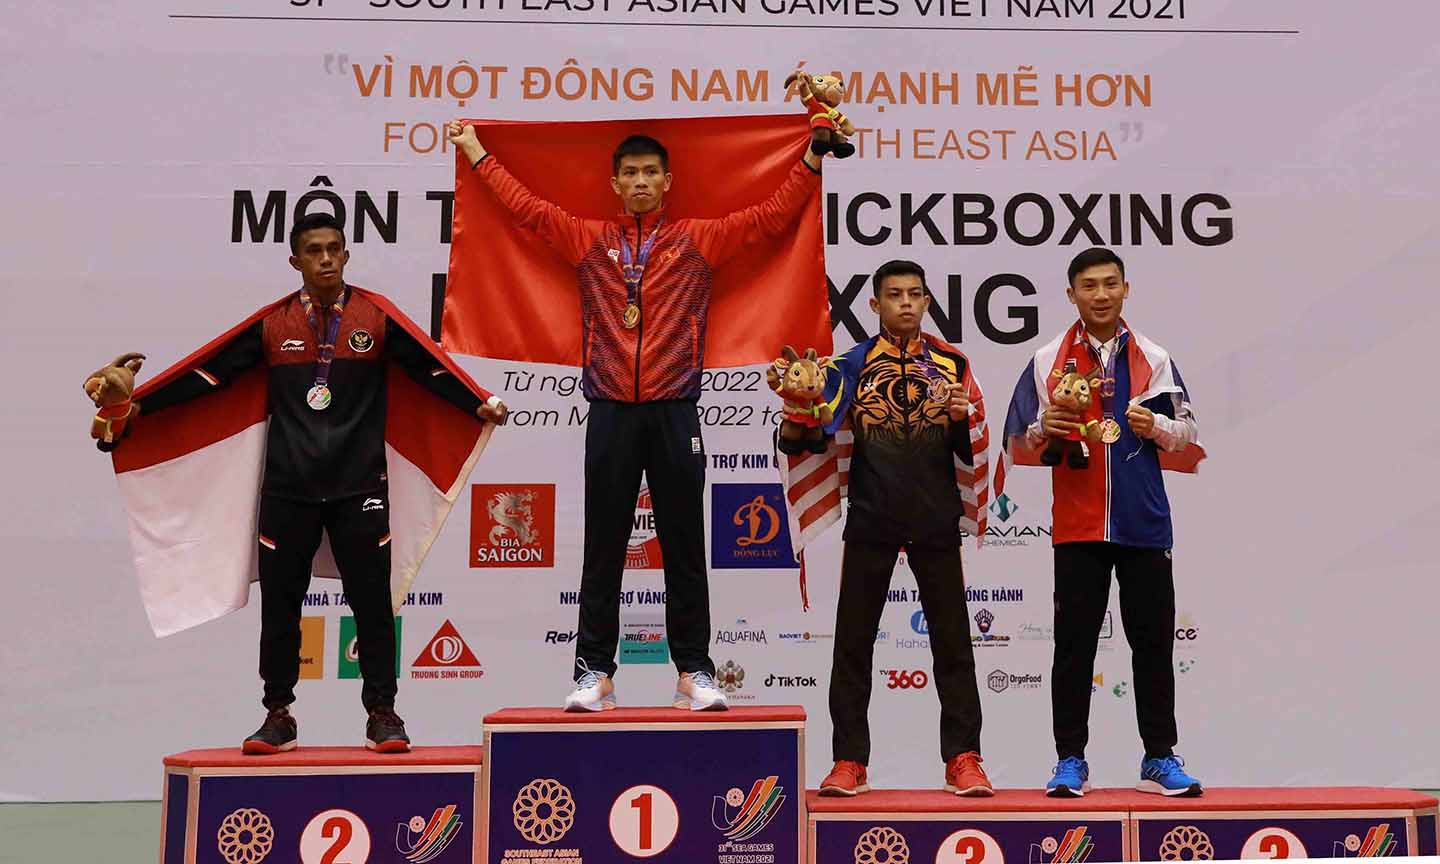 Võ sĩ Huỳnh Văn Tuấn đoạt HCV ở hạng cân 51 kg của bộ môn Kick-boxing.